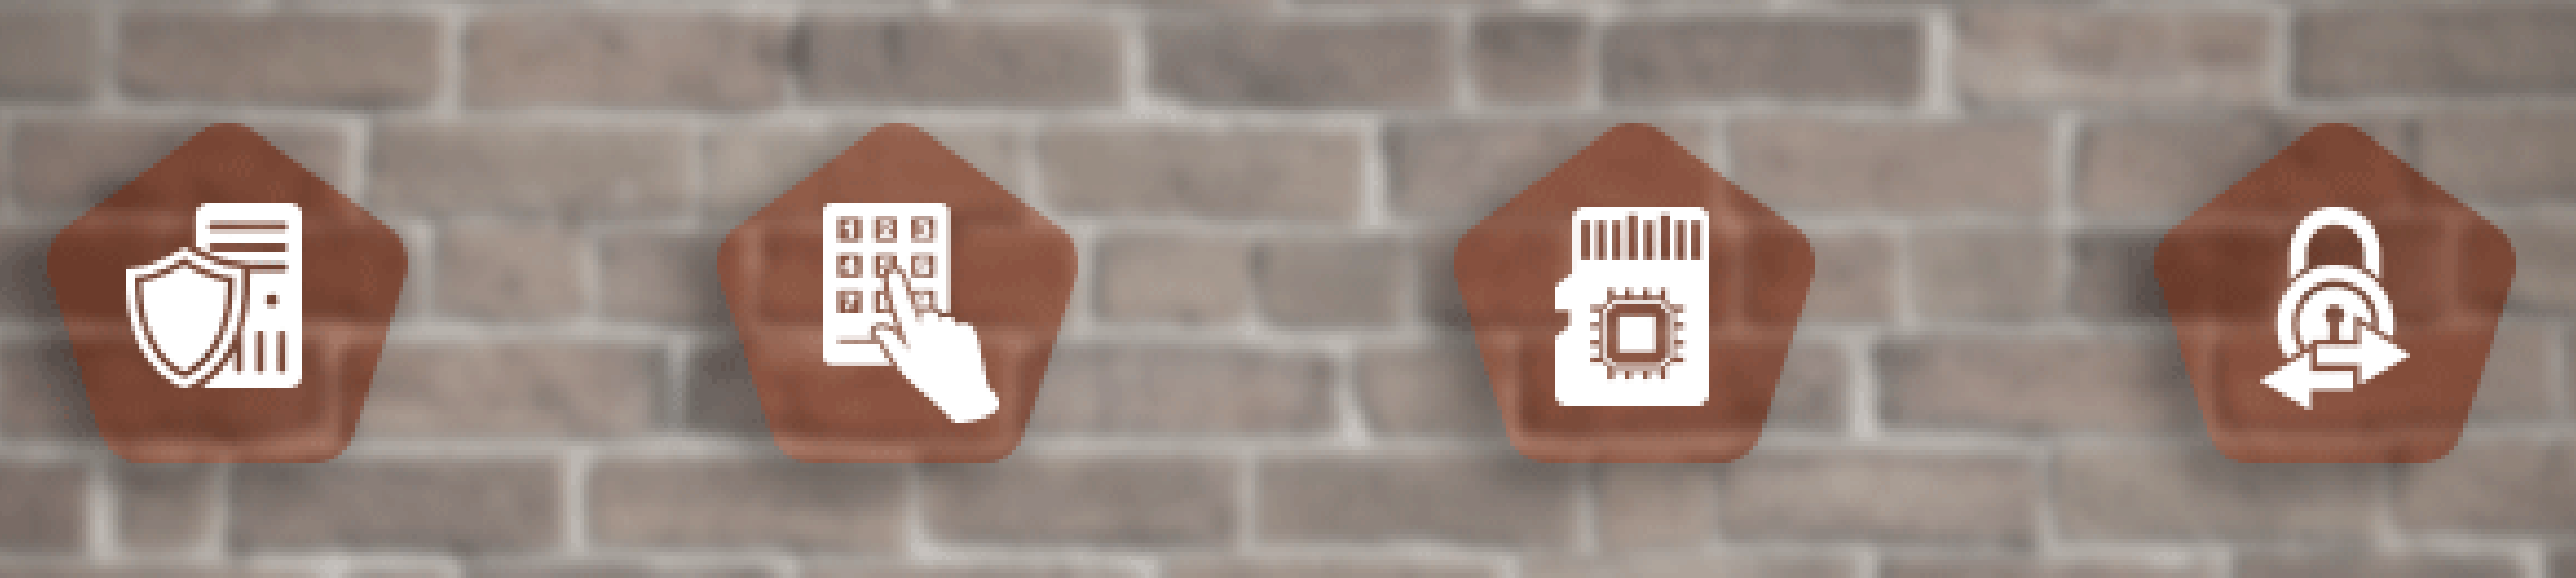 Shield, key pad, memory card, and lock on brick wall